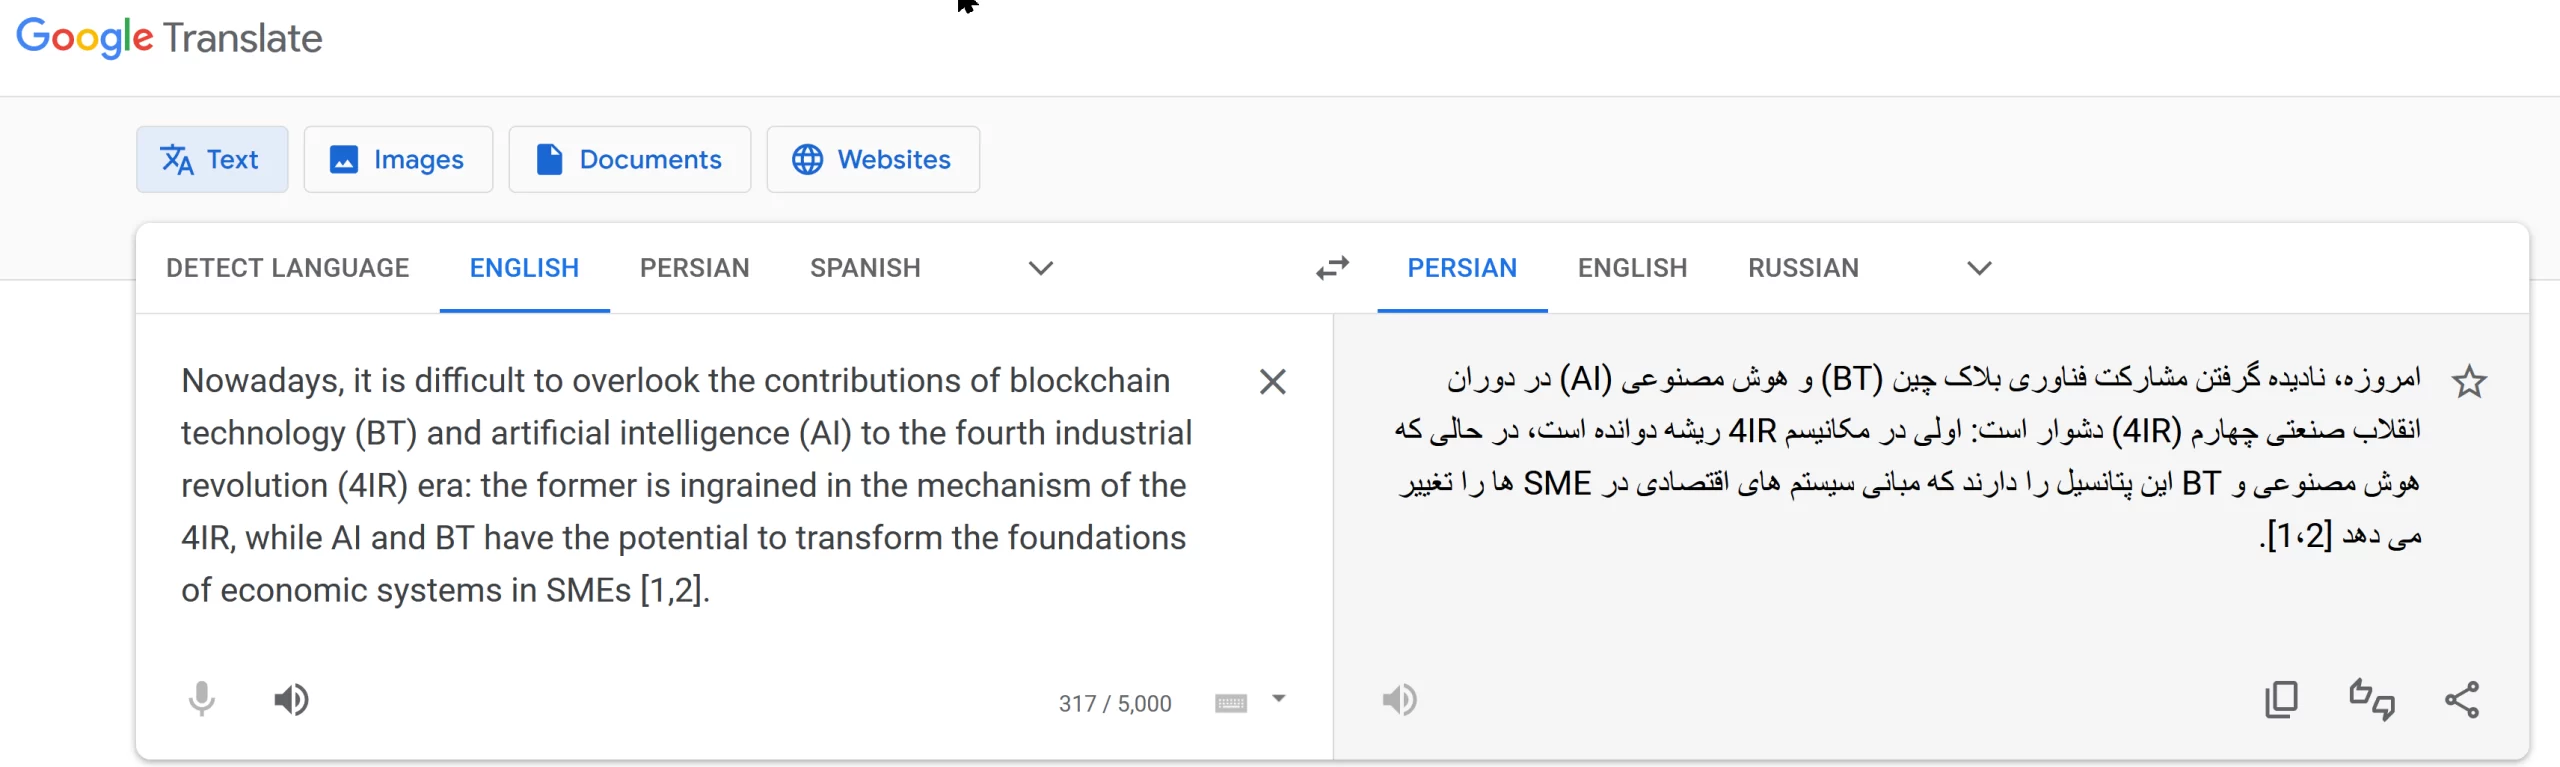 ترجمه با گوگل ترنسلیت